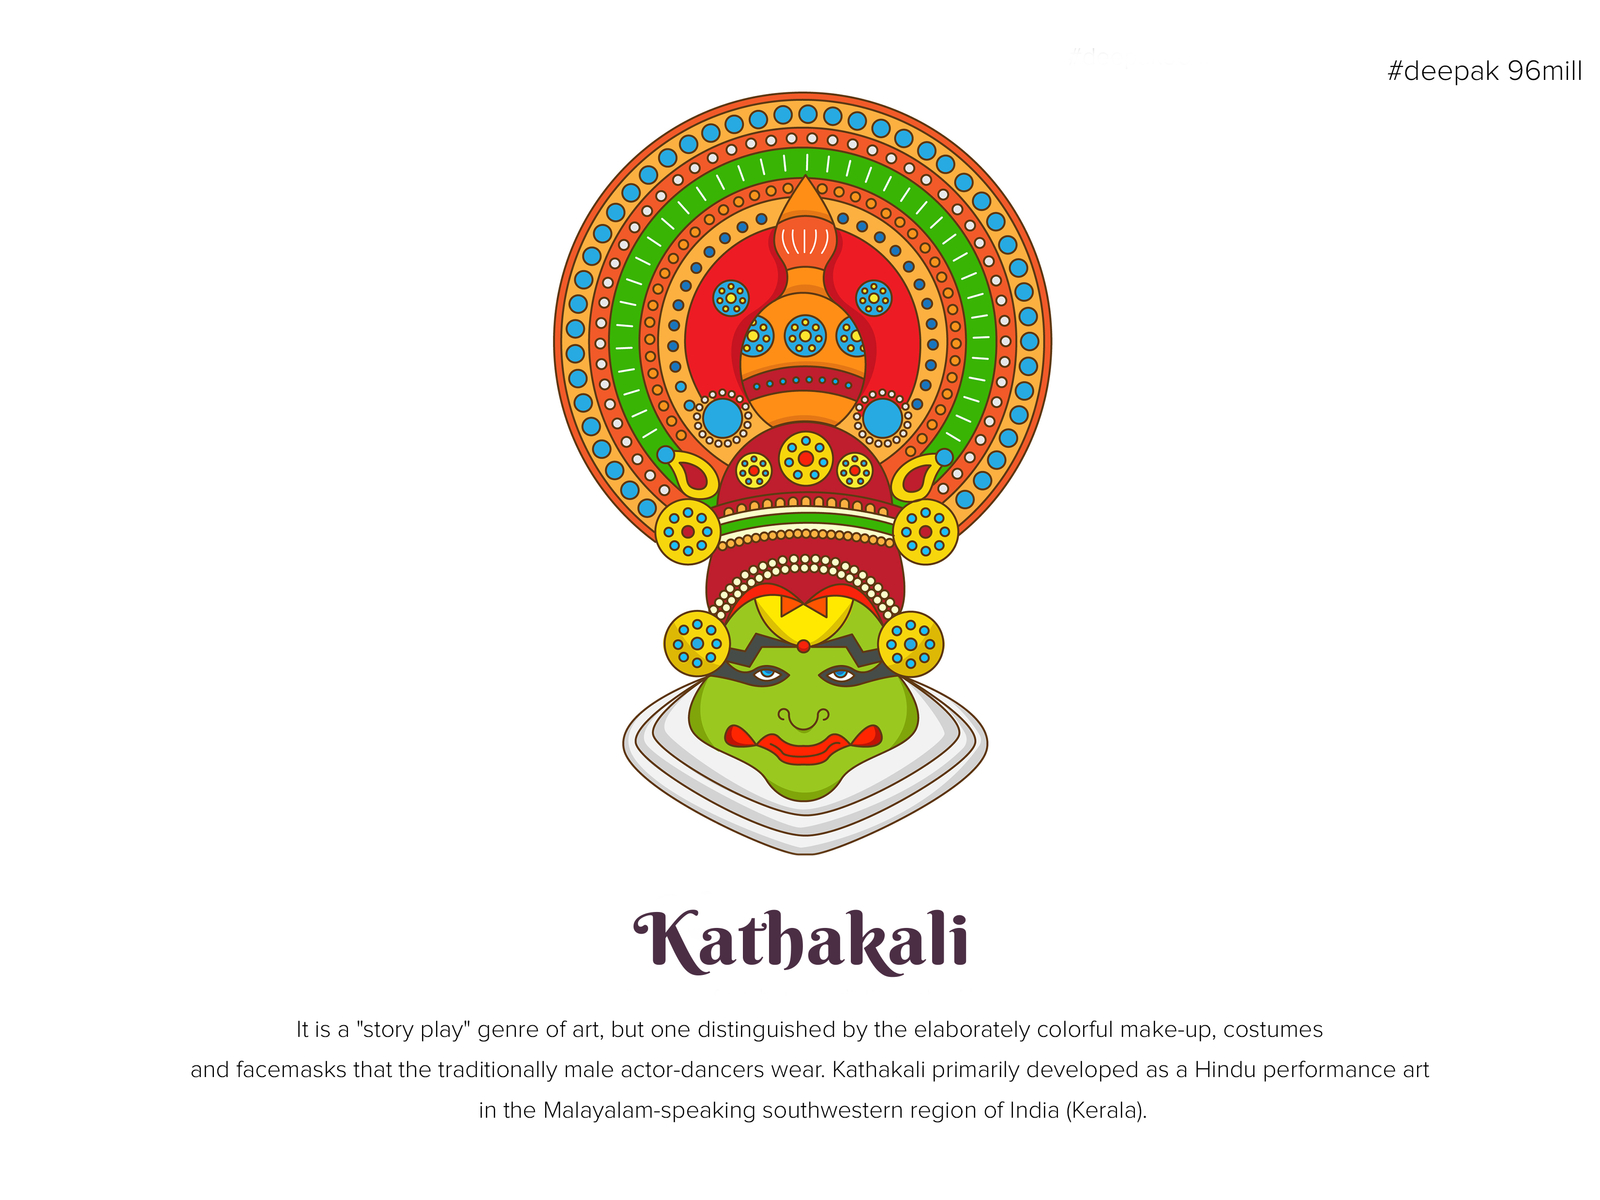 KATHAKALI FACE DRAWING EASY DOODLE ART |ONAM CELEBRATION KATHAKALI DRAWING|MANDALA  DRAWING TUTORIAL - YouTube